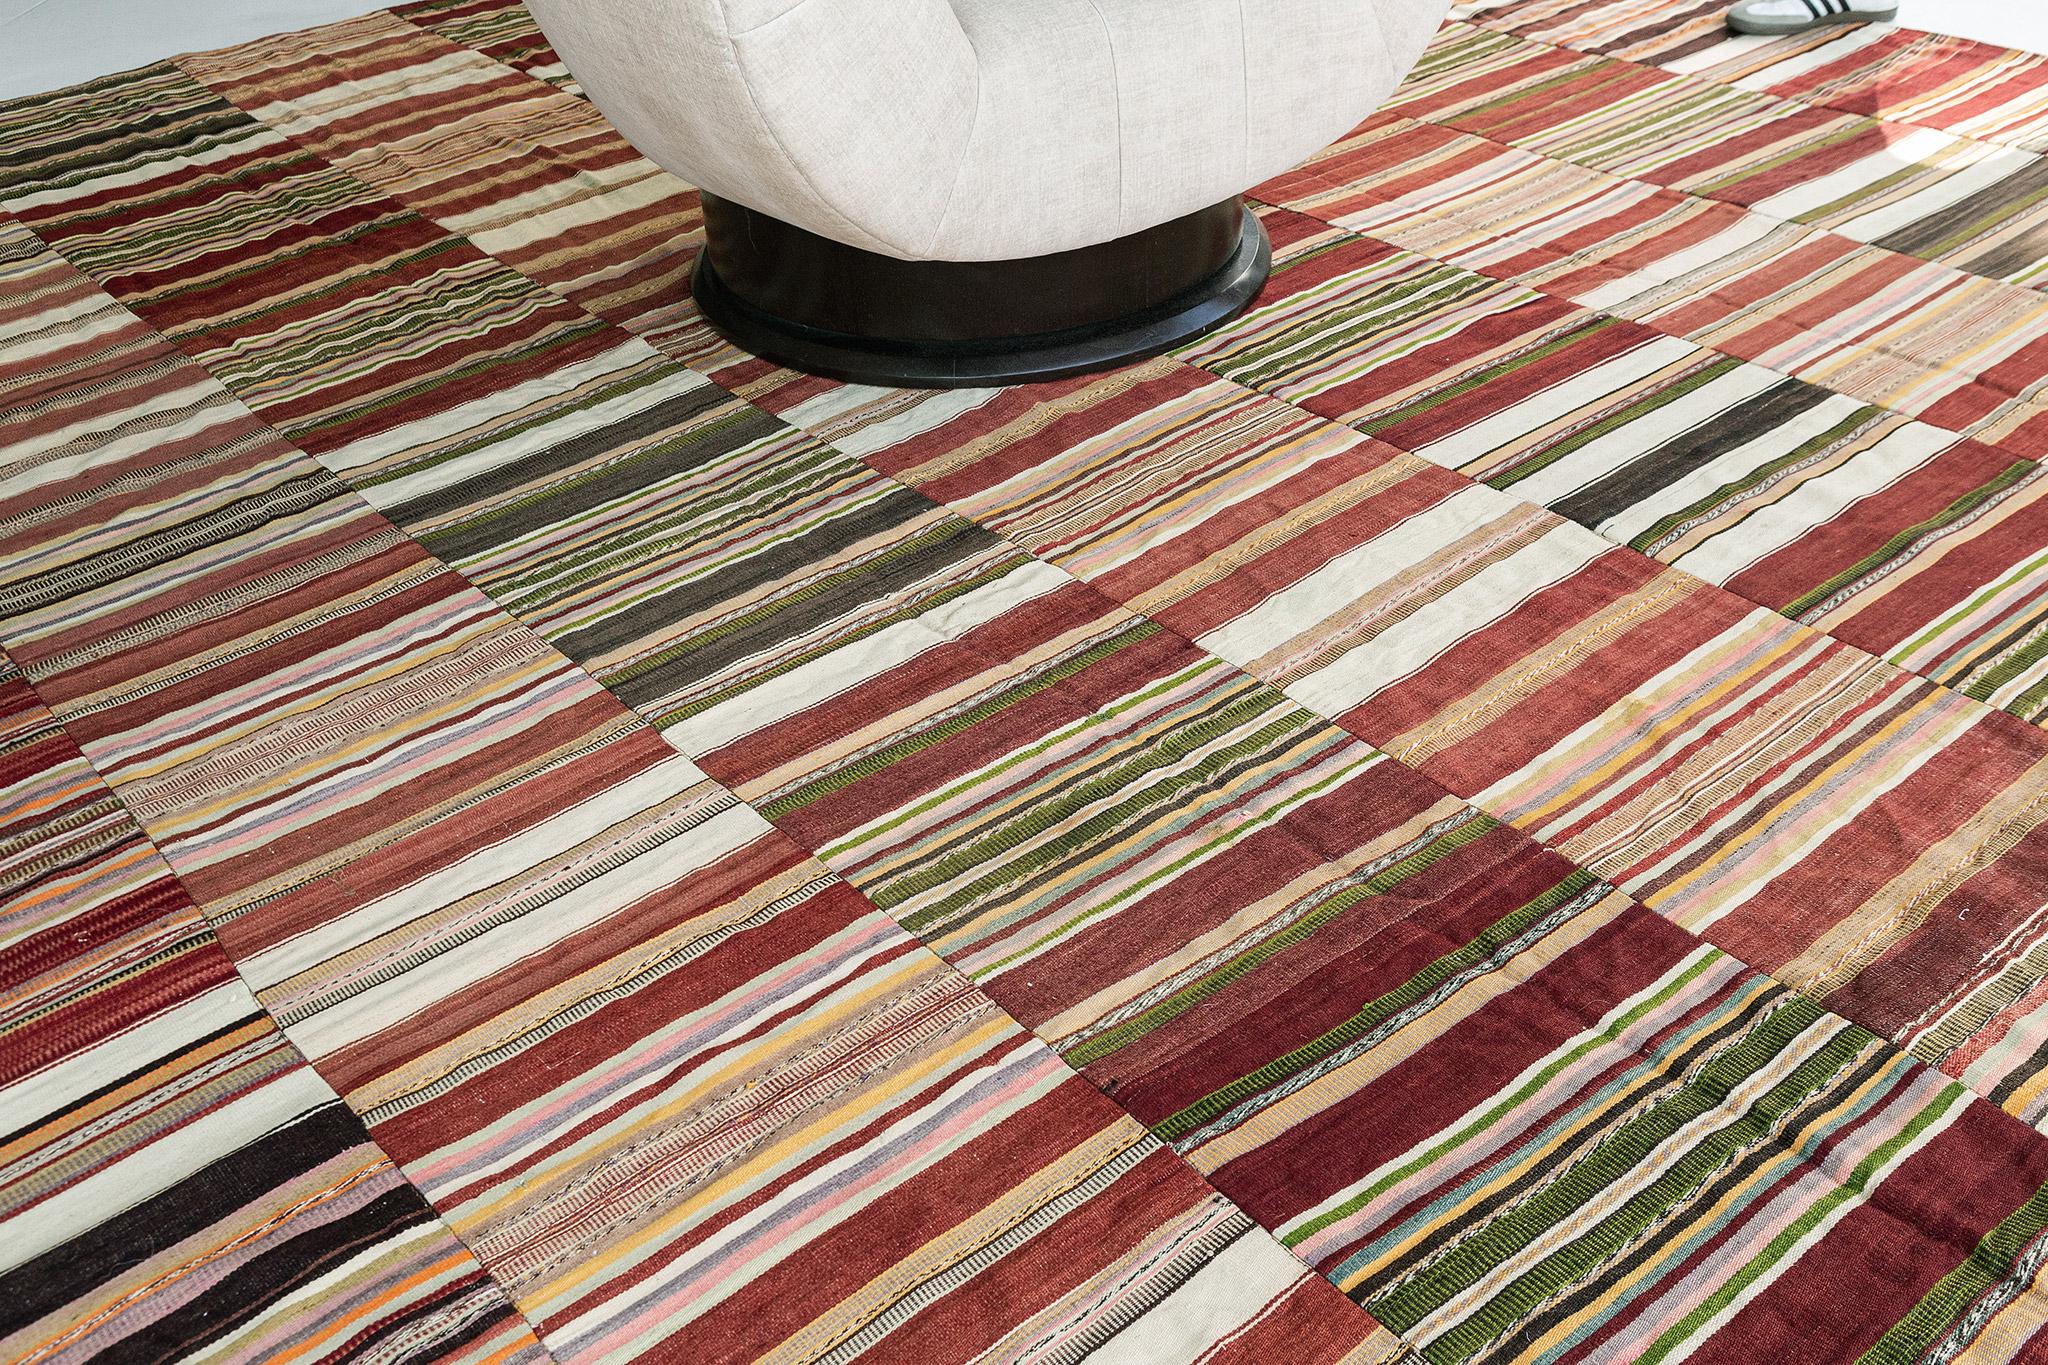 Die Mischung verschiedener horizontaler Muster in unterschiedlichen Farben ergibt bei diesem türkischen Patchwork-Kilim-Teppich ein atemberaubendes Design. Streifen sind ein klassisches Muster, das sowohl breite als auch schmale Streifen in